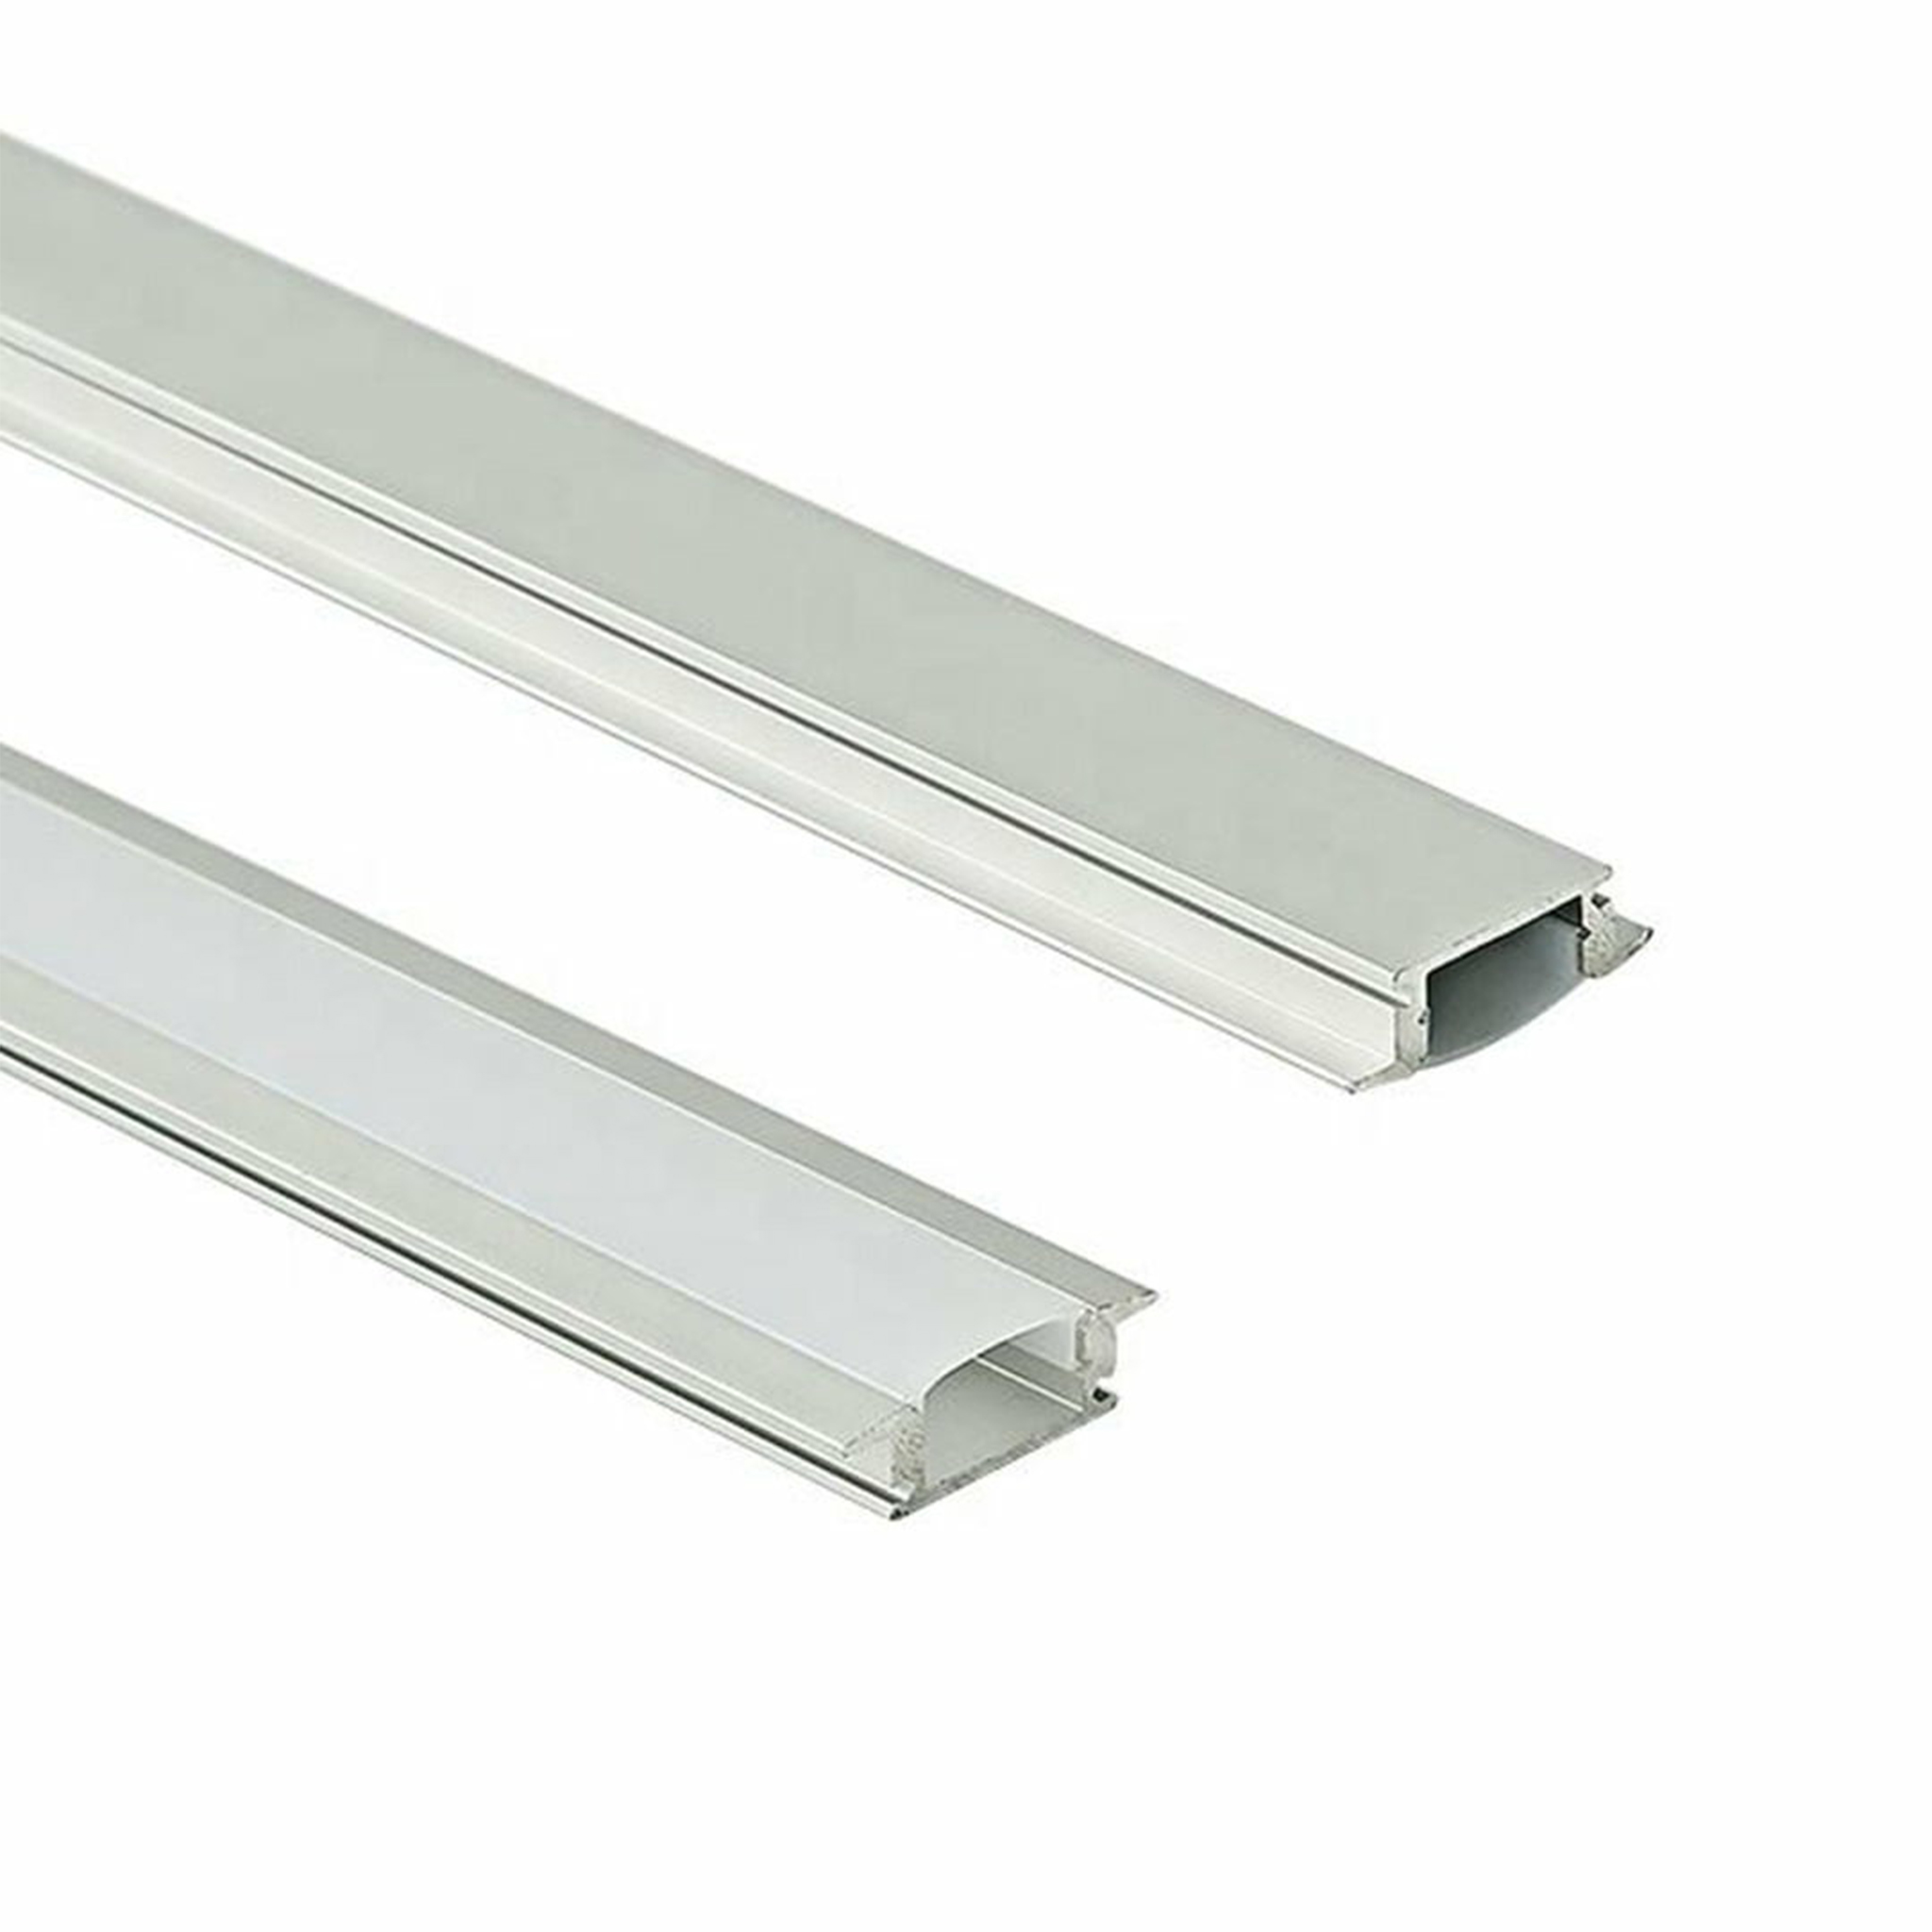 بروفايل المينوم اقتصادي 0.7x18 لطش طول 3 متر LED strips aluminum channel CN-509 frugal Silver